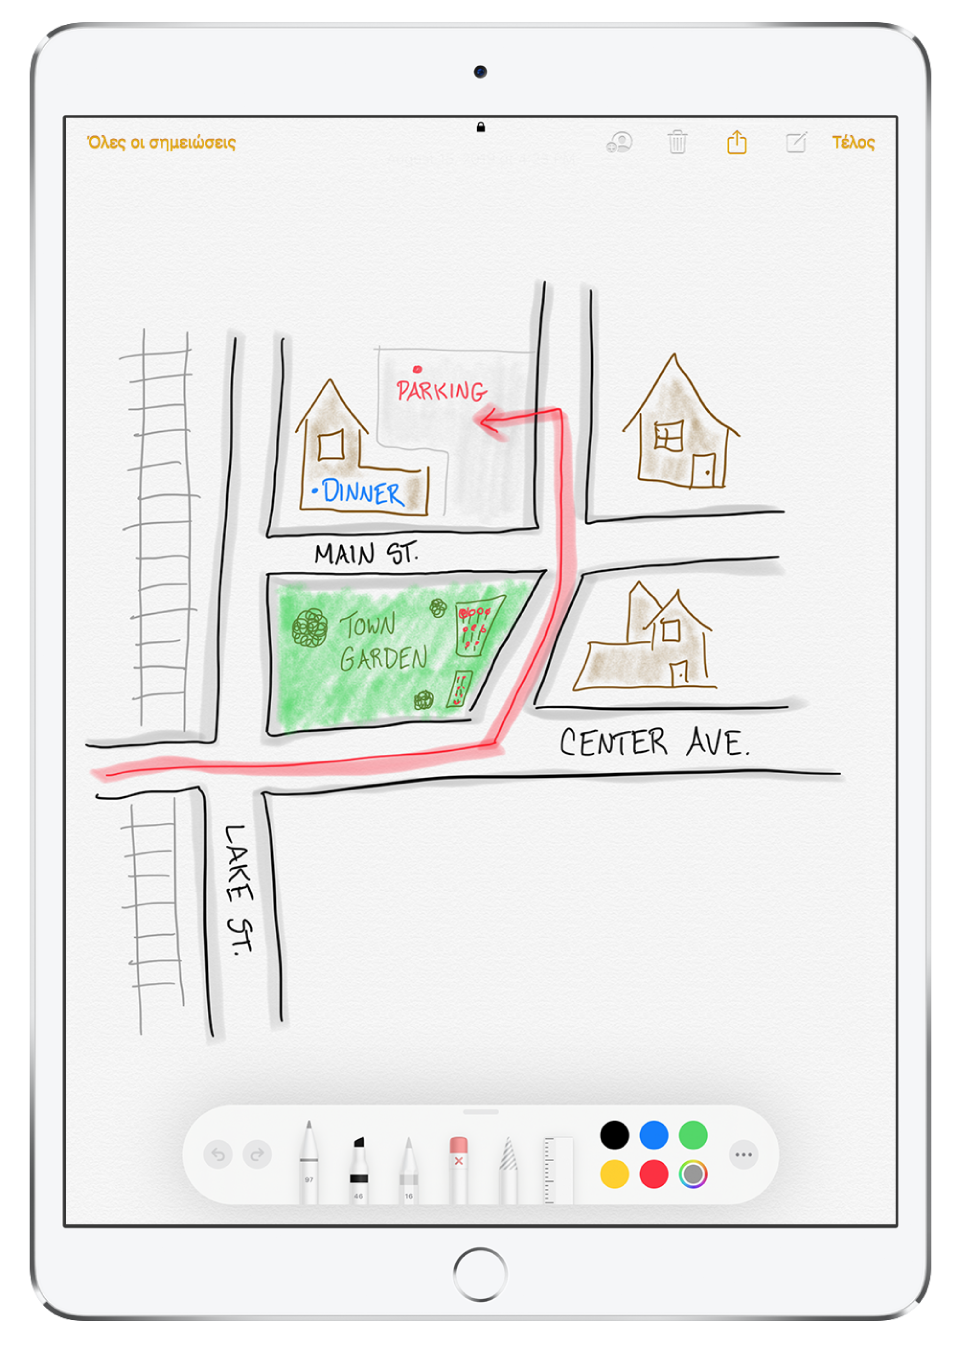 Σχέδιο μιας γειτονιάς μέσα σε μια σημείωση στην εφαρμογή «Σημειώσεις». Το σχέδιο περιλαμβάνει δρόμους με ονόματα και ένα κόκκινο βέλος που δείχνει στον διαθέσιμο χώρο στάθμευσης. Κατά μήκος του κάτω μέρους της οθόνης υπάρχει η γραμμή εργαλείων Σήμανσης με επιλεγμένο ένα μέσο γραφής και ένα προσαρμοσμένο χρώμα.